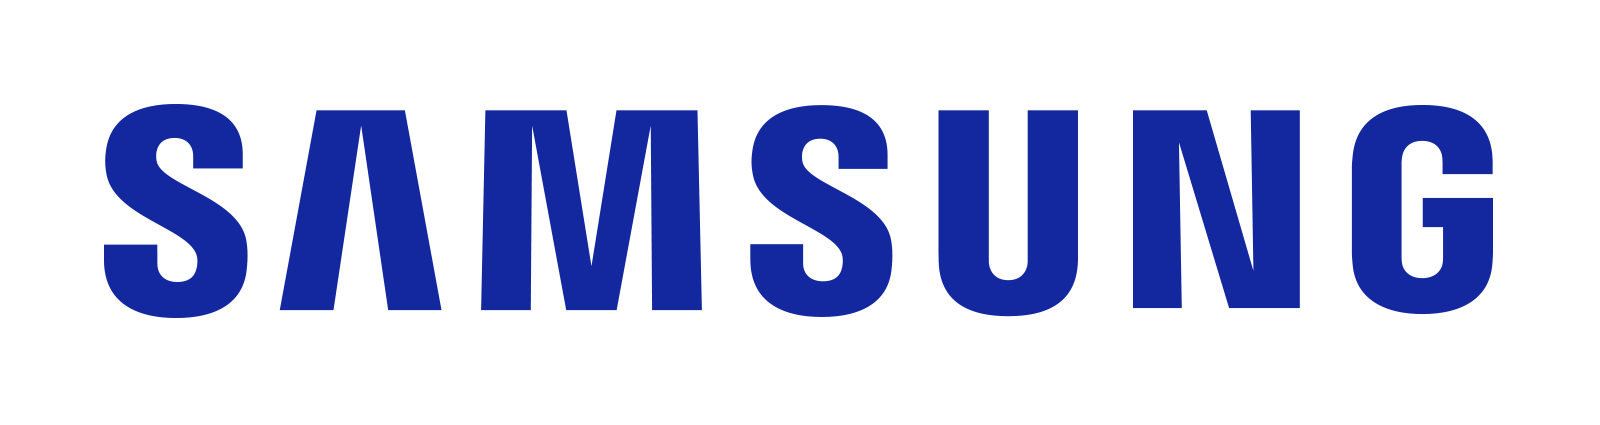 Samsung_Orig_Wordmark_BLUE_RGB.png